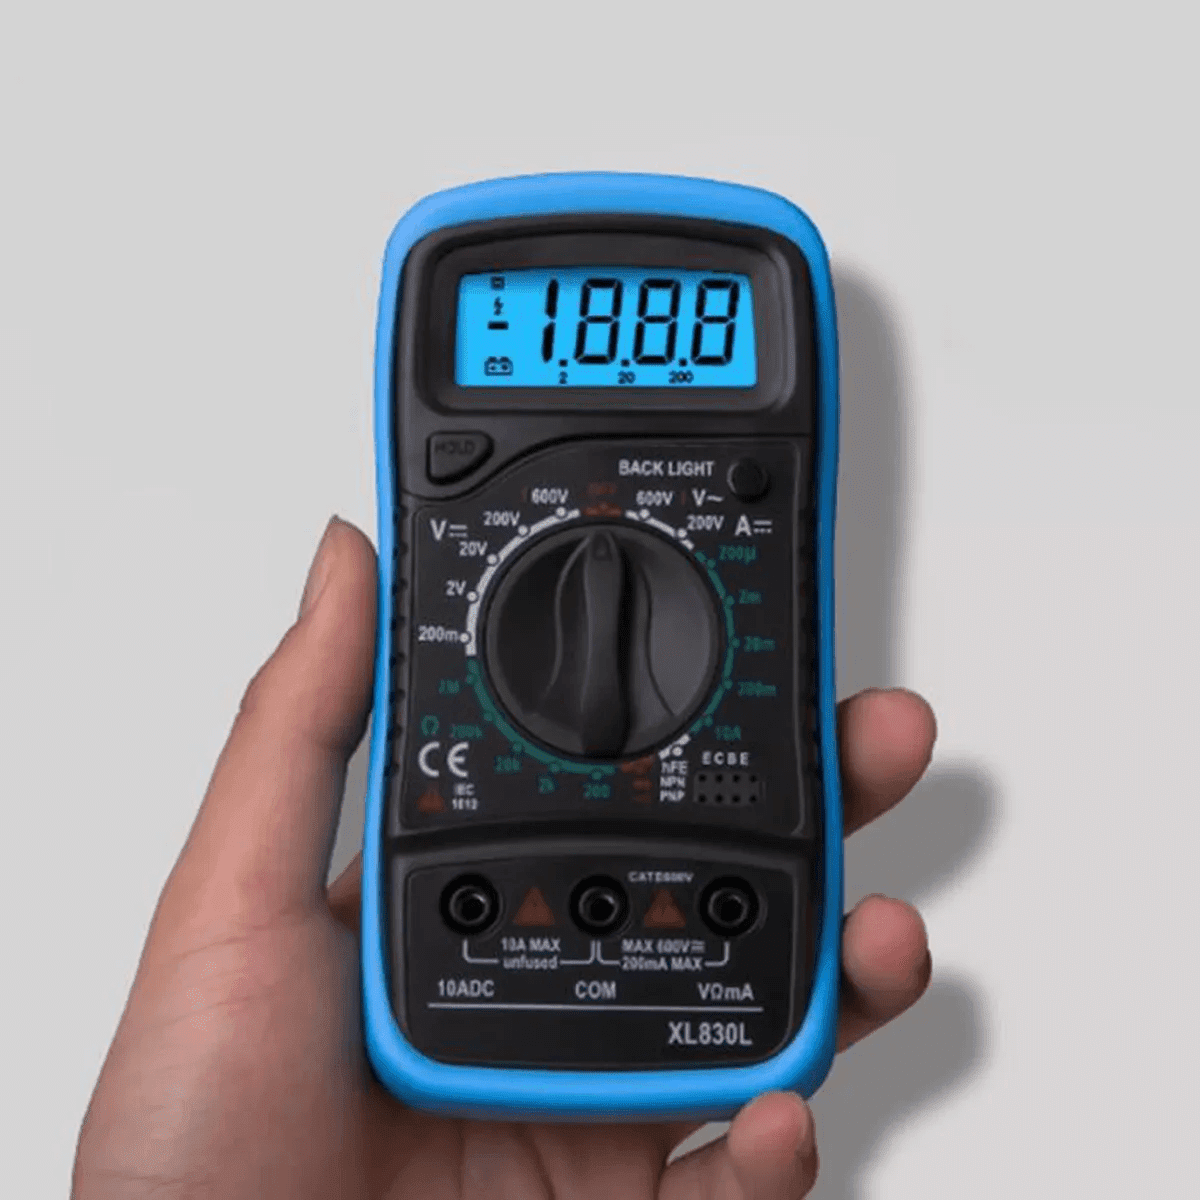 Testeur électrique : tout savoir sur le multimètre, voltmètre et